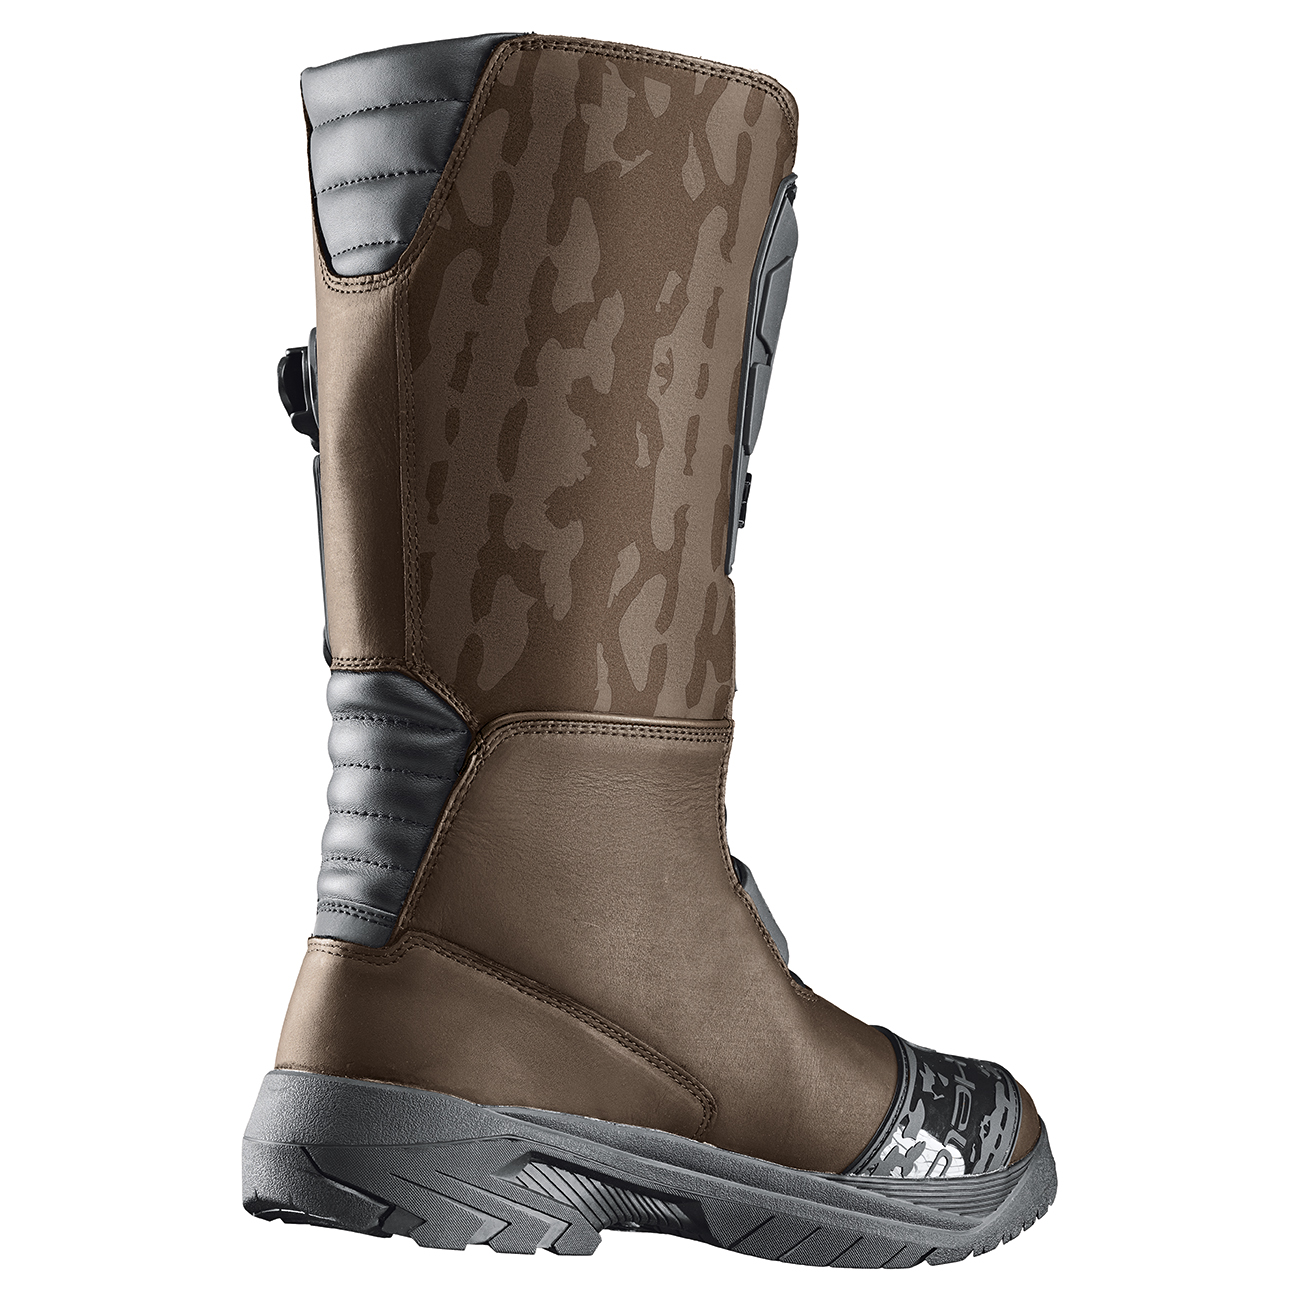 Brickland Gore-Tex boots